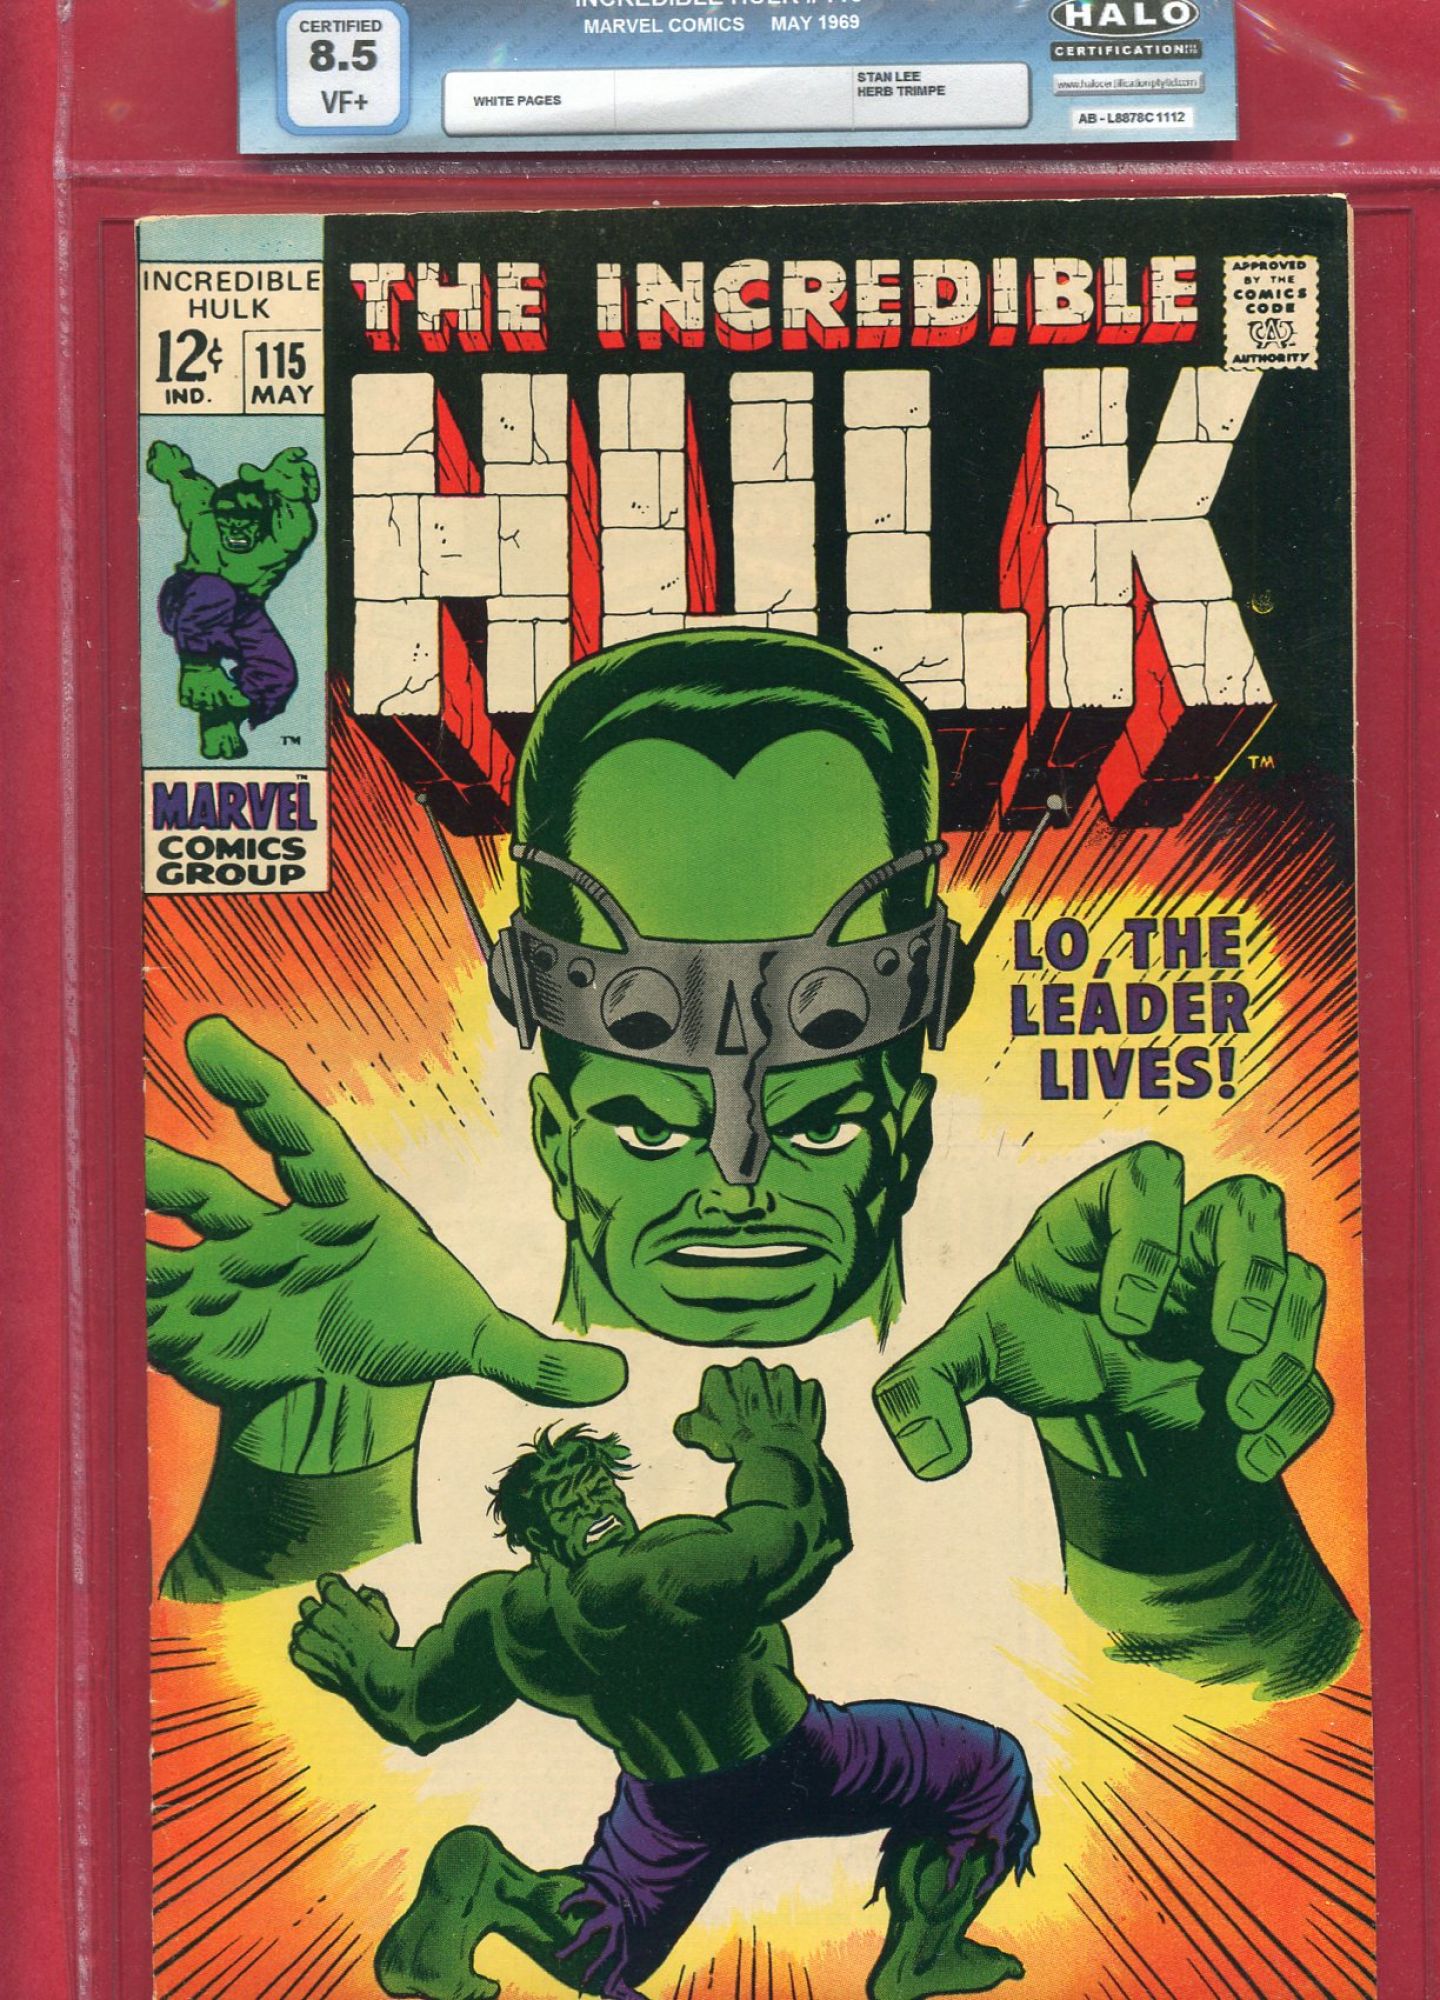 Incredible Hulk #115, May 1969, 8.5 VF+ Halo Soft Slab